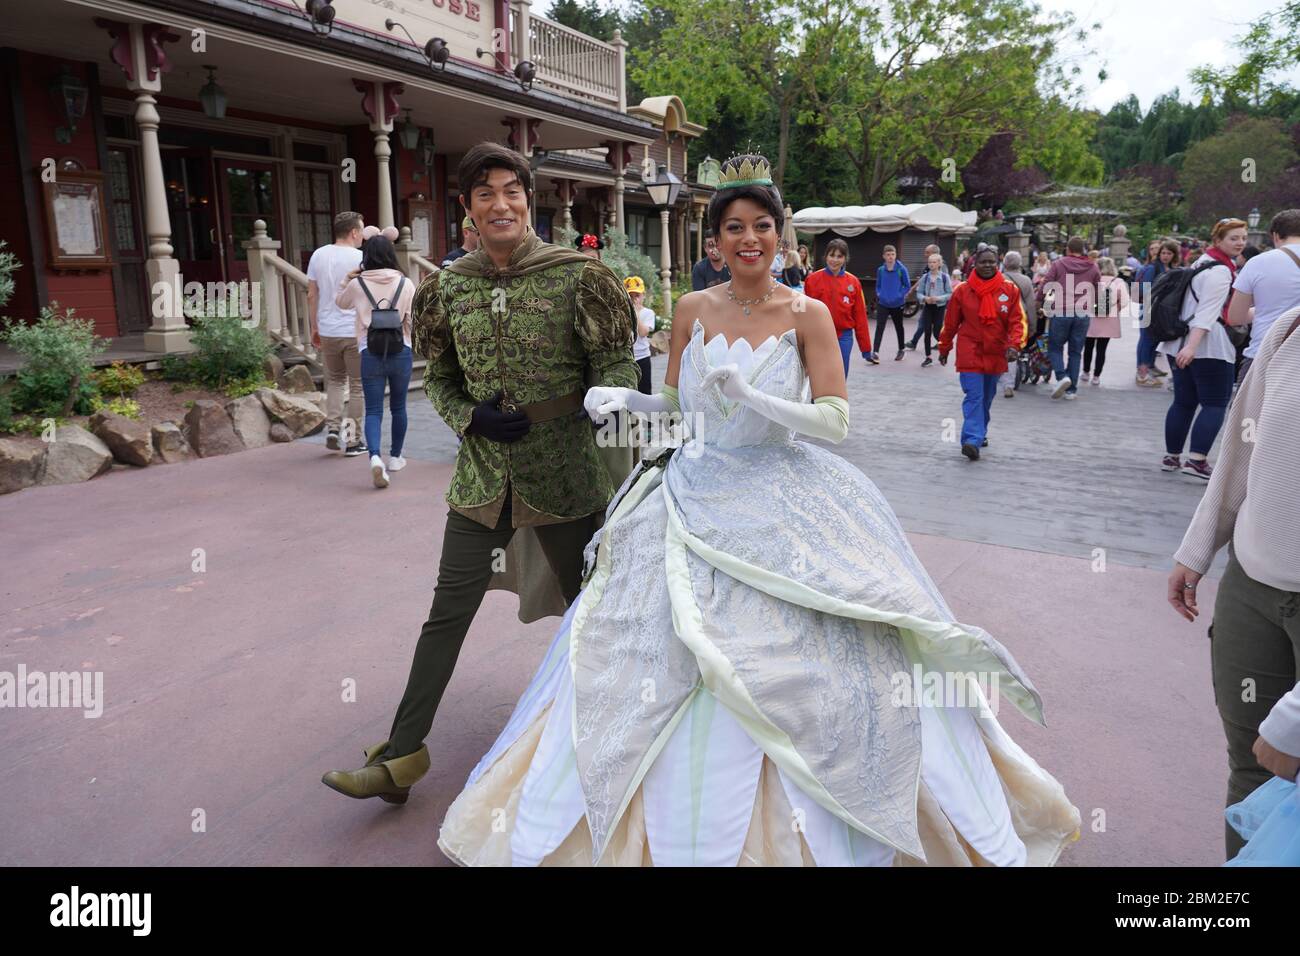 Les acteurs de Kiss la grenouille marchent en souriant comme Tiana et le prince Naveen à travers la rue du parc à thème à Disneyland. Paris France, 29. Mai 2019. Banque D'Images